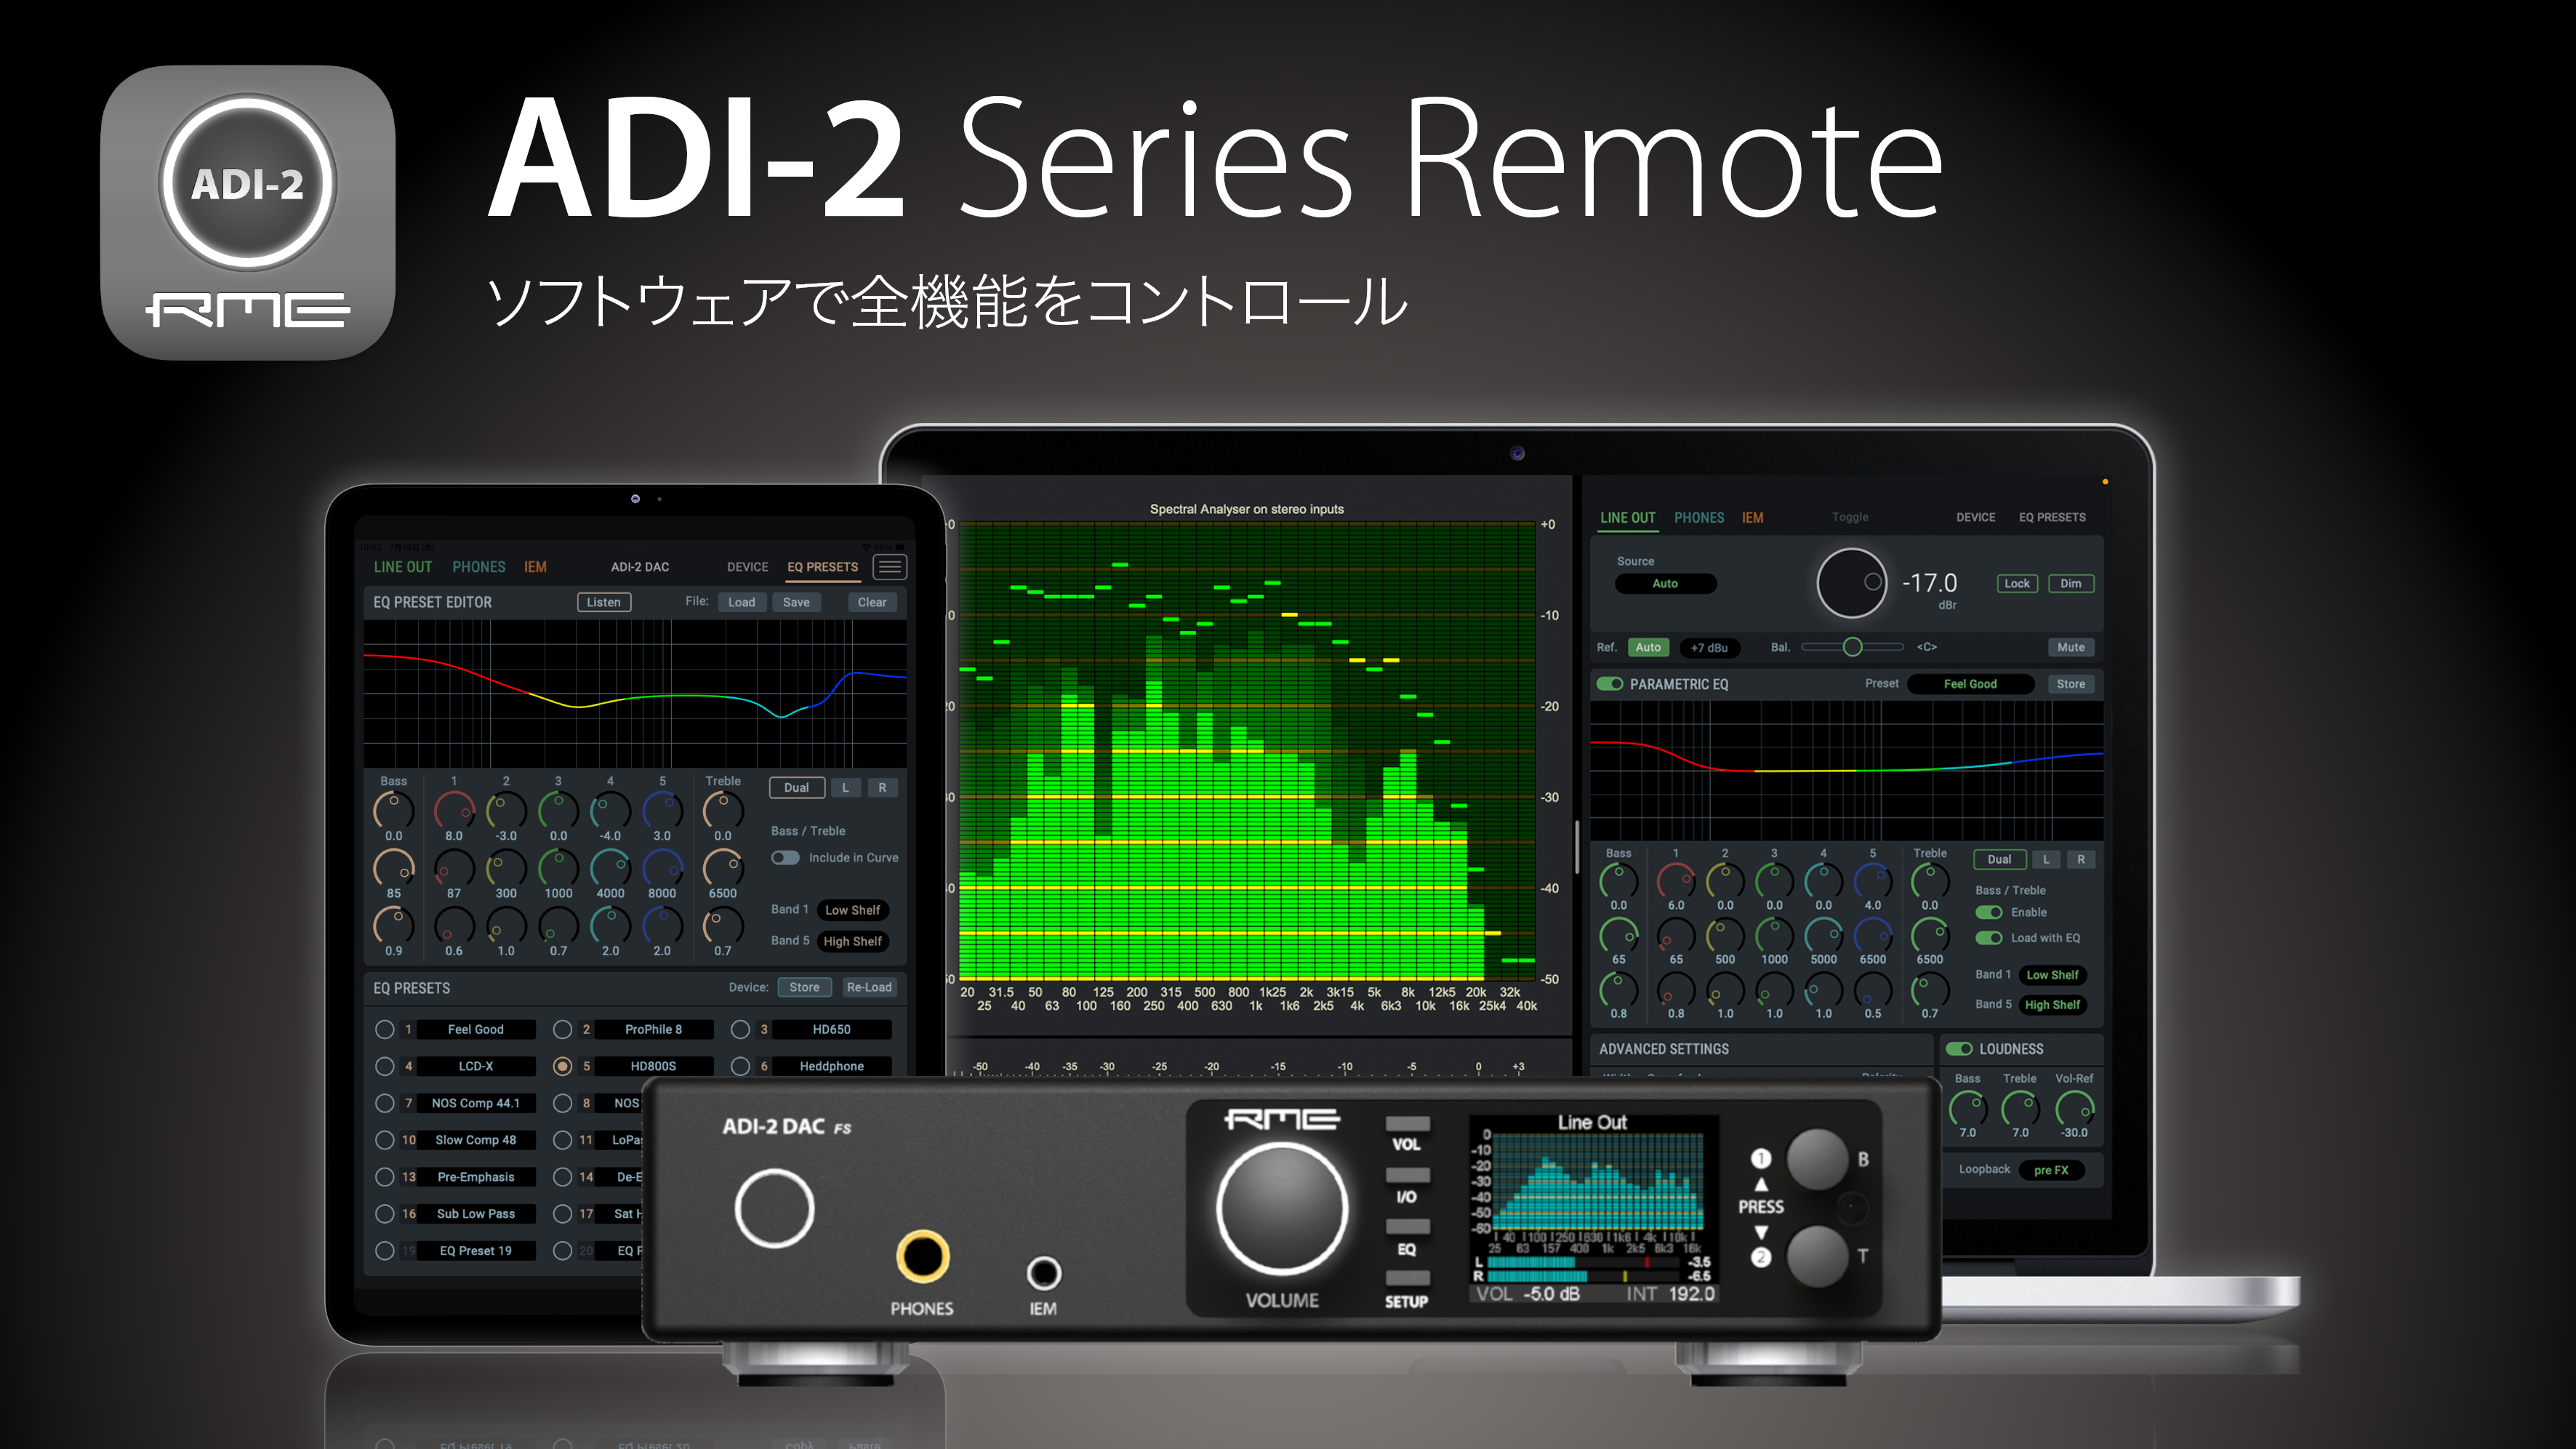 ADI-2 Remote